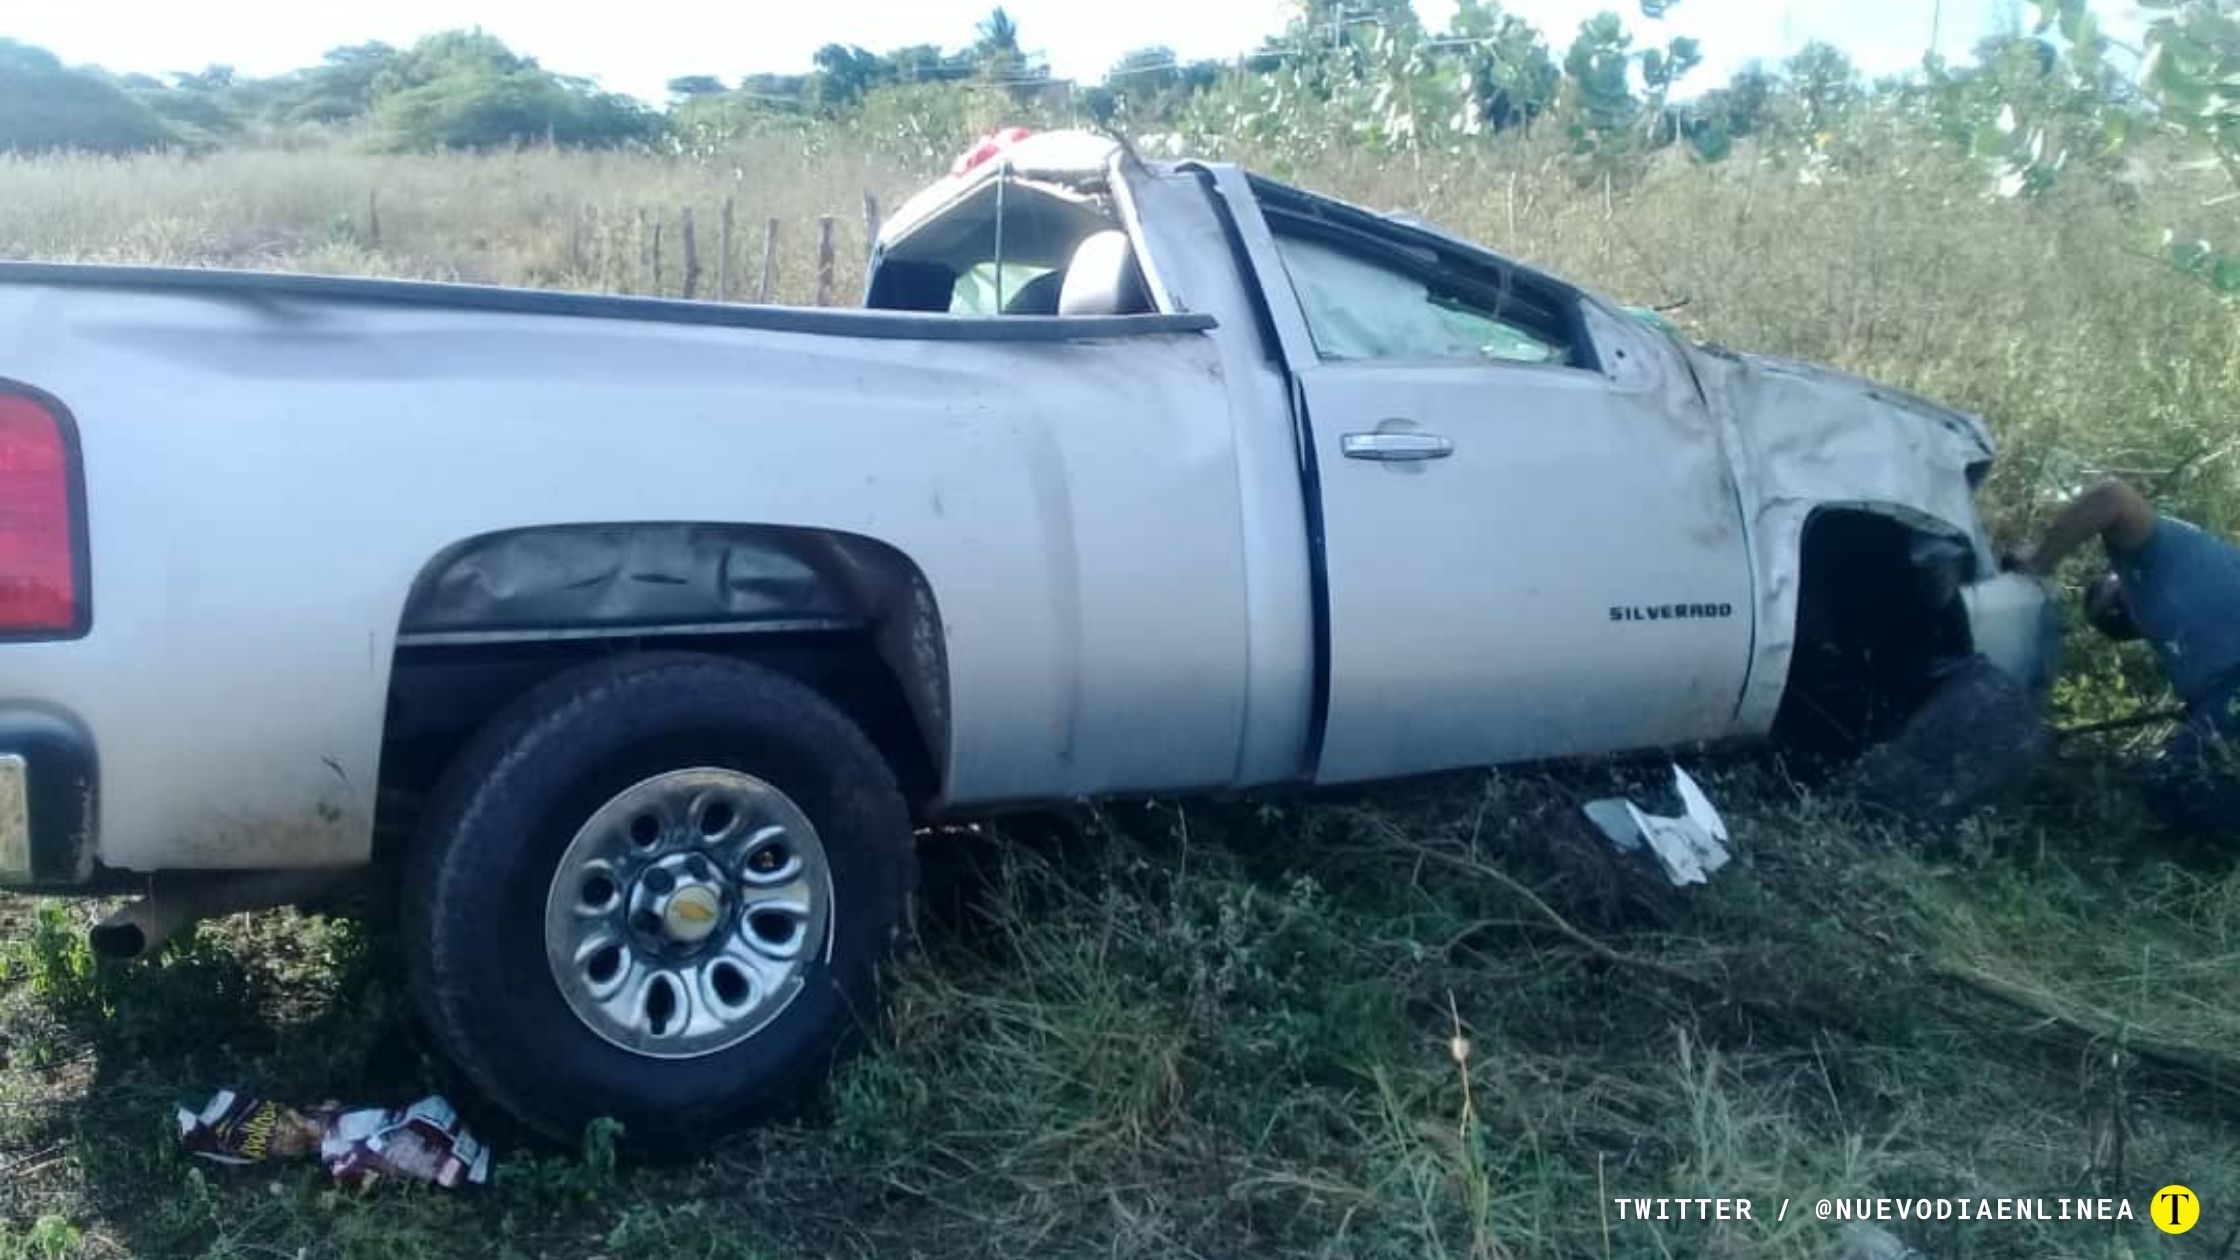 Camioneta Silverado plateada donde viajaba María Lastra, alcaldesa del municipio Píritu y donde murió en el accidente. Foto: Twitter / @nuevodiaenlinea